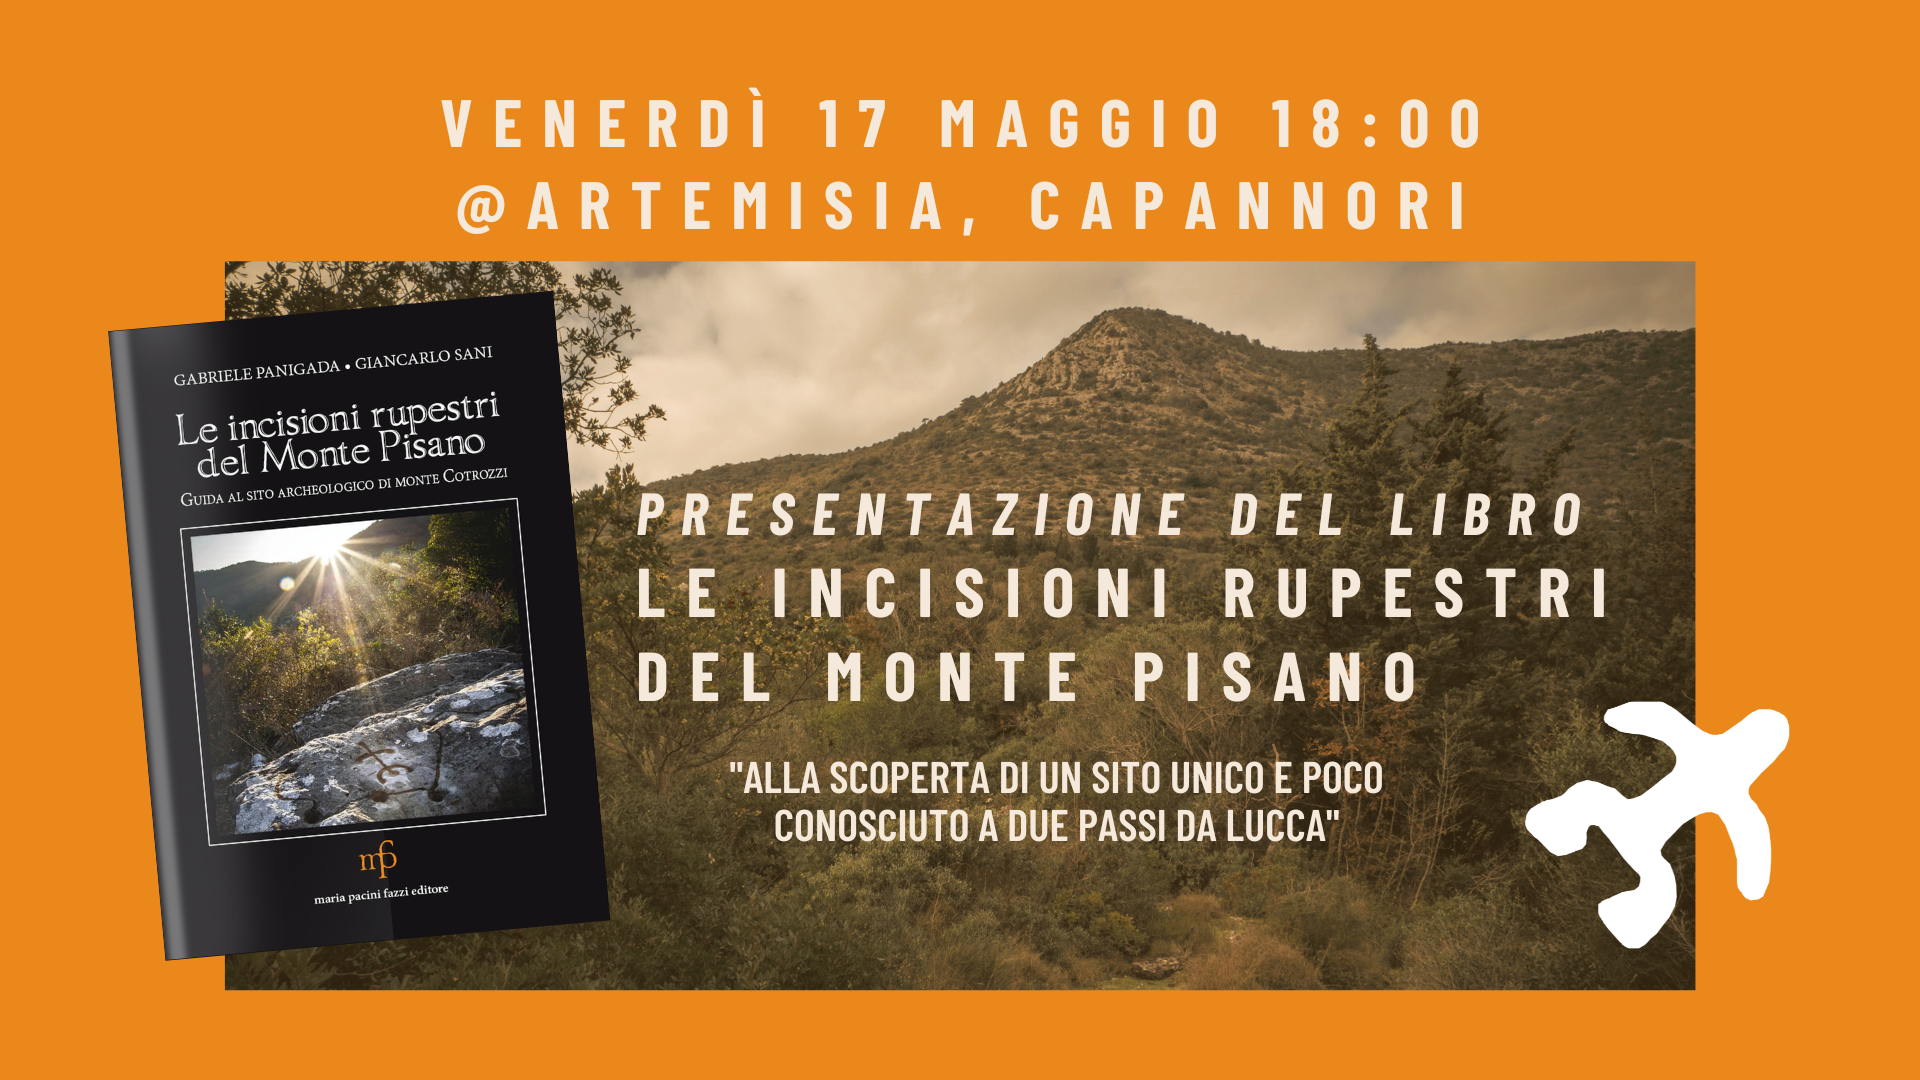 Presentazione del libro “Le incisioni rupestri del Monte Pisano” ad Artemisia (Capannori)